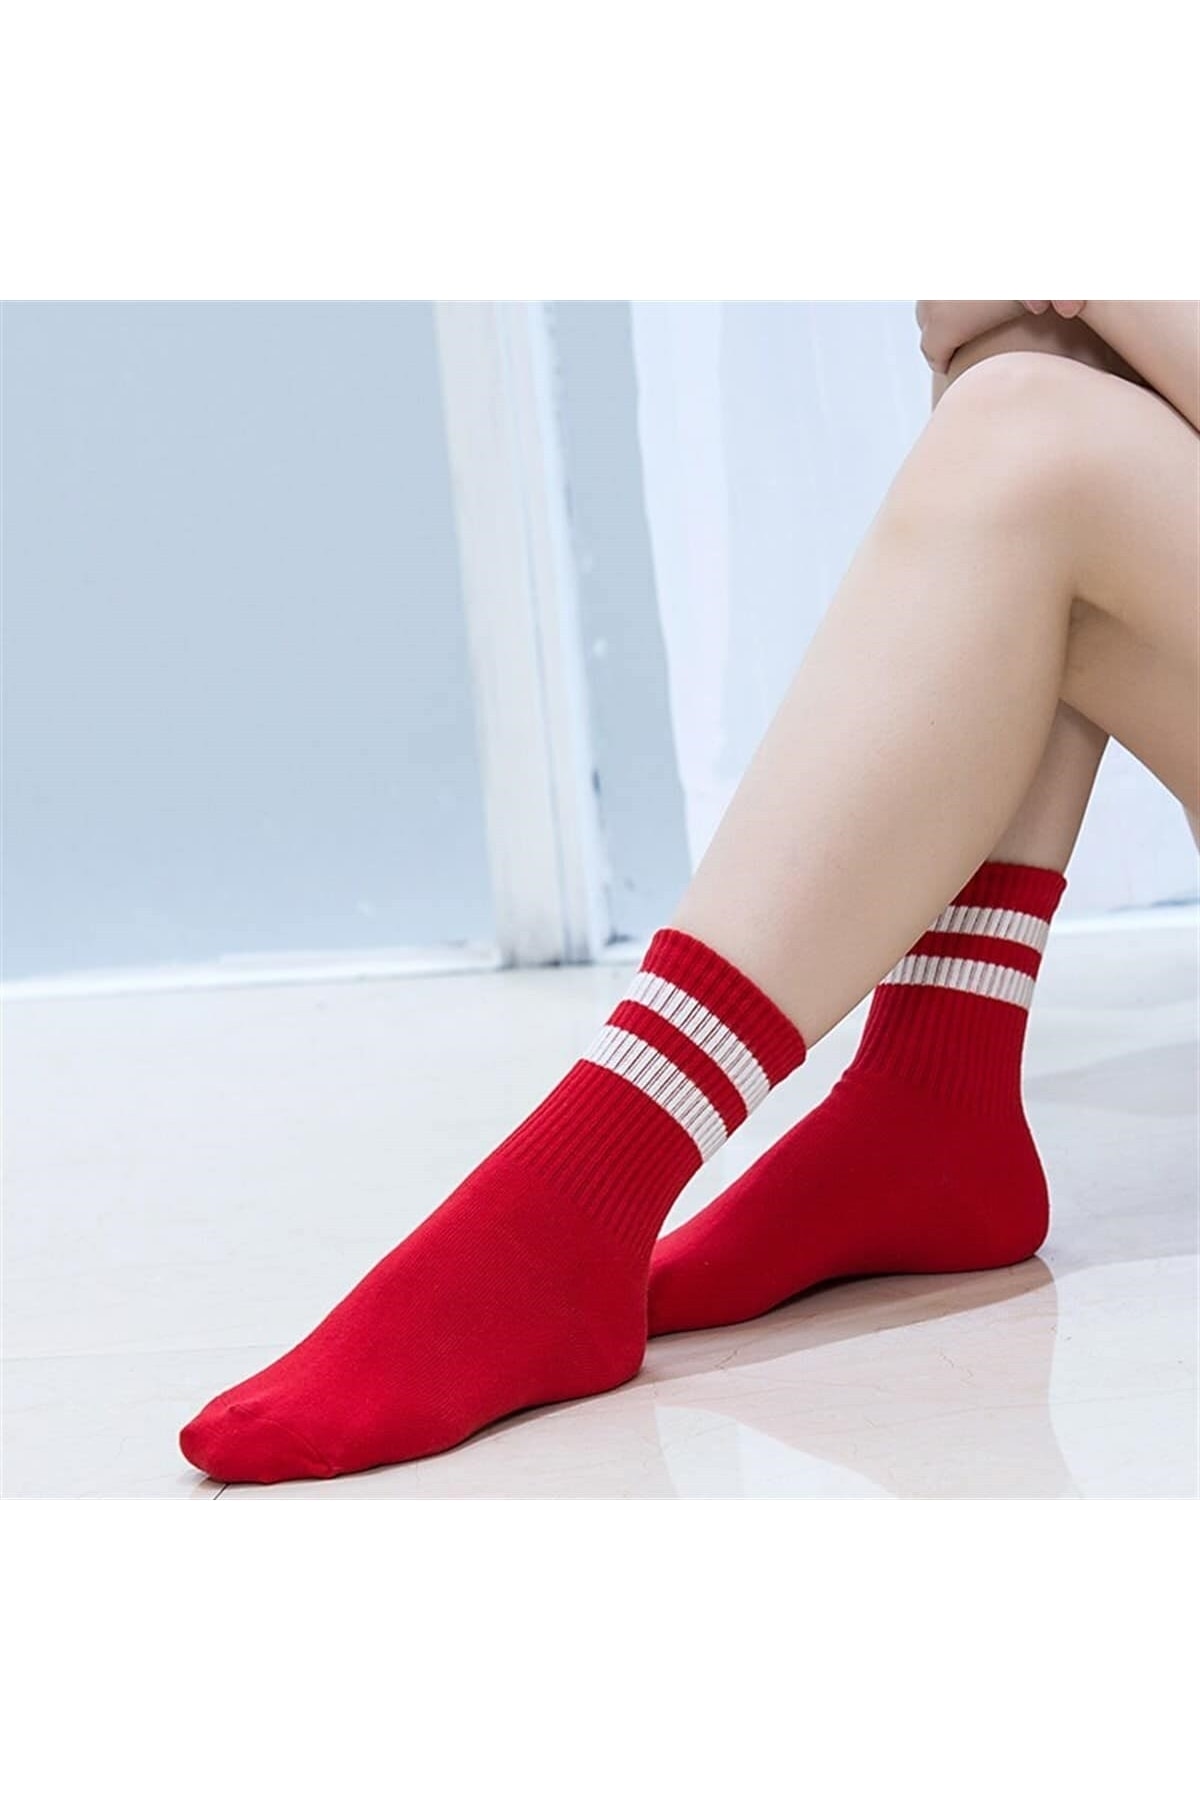 Bad Habit Socks Beyaz Çizgili Kırmızı Tenis Çorap